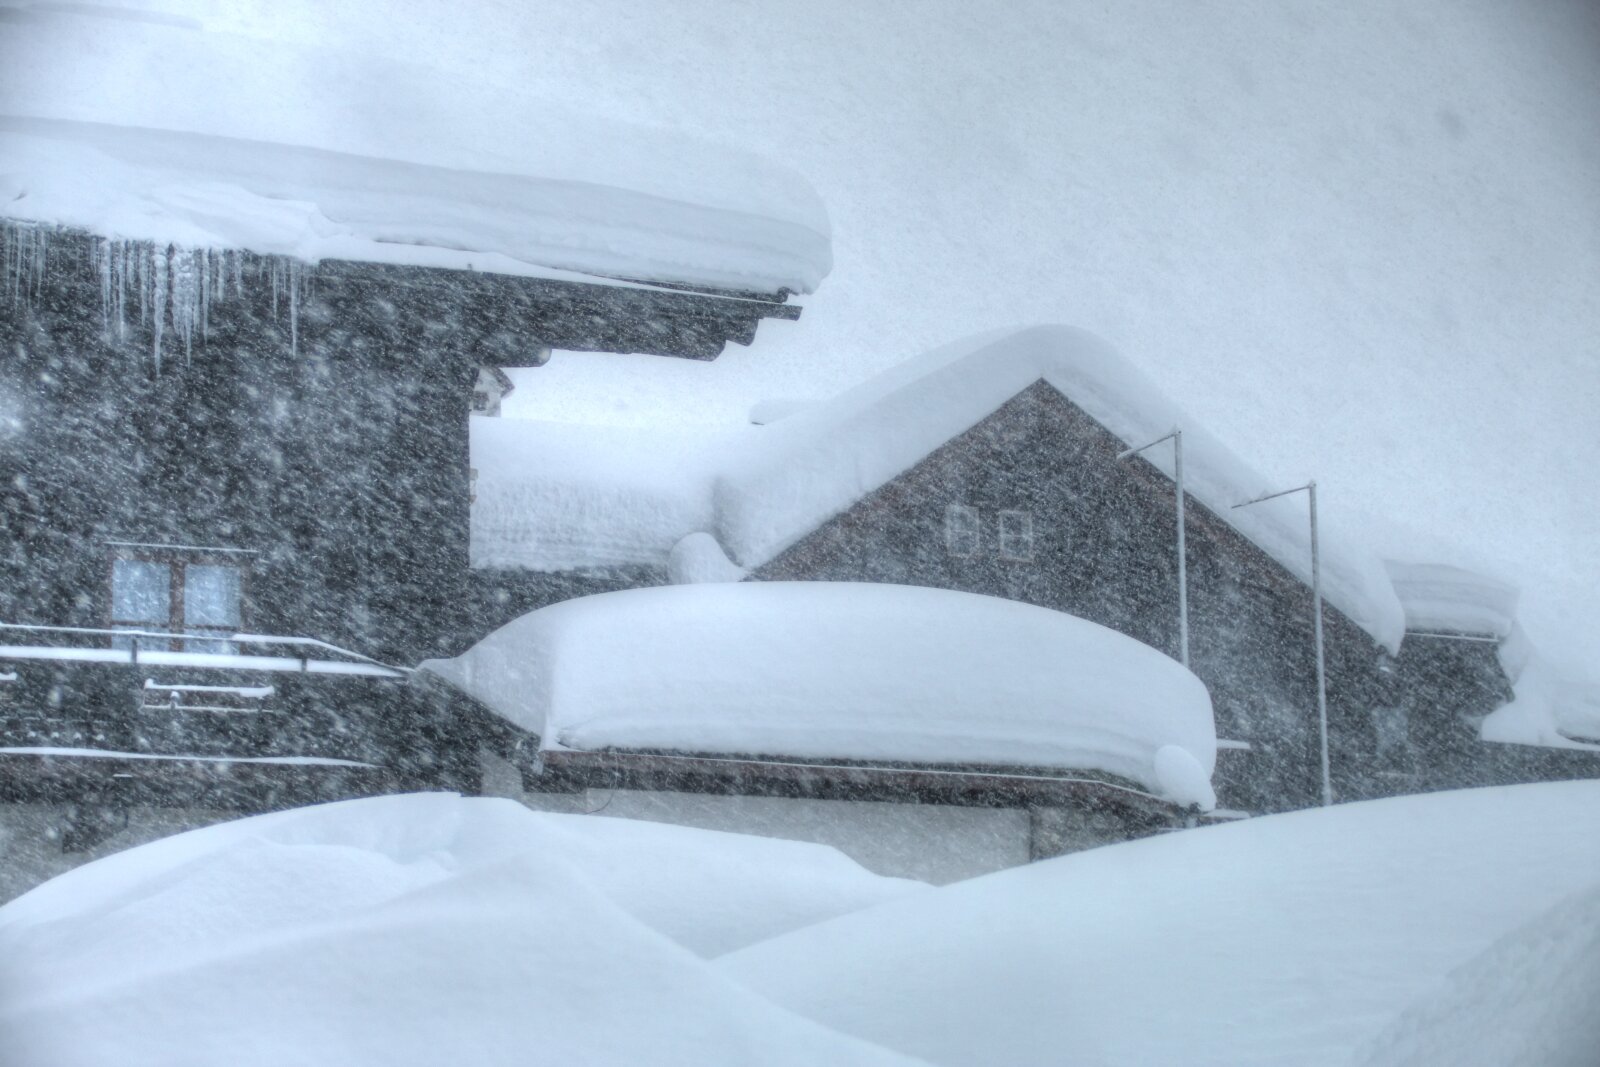 Hochkönig régió egy tavalyi nagy havazáskor, a mostani front is hozhat hasonló menyiségeket - Fotó: Stánicz Balázs (Stani)